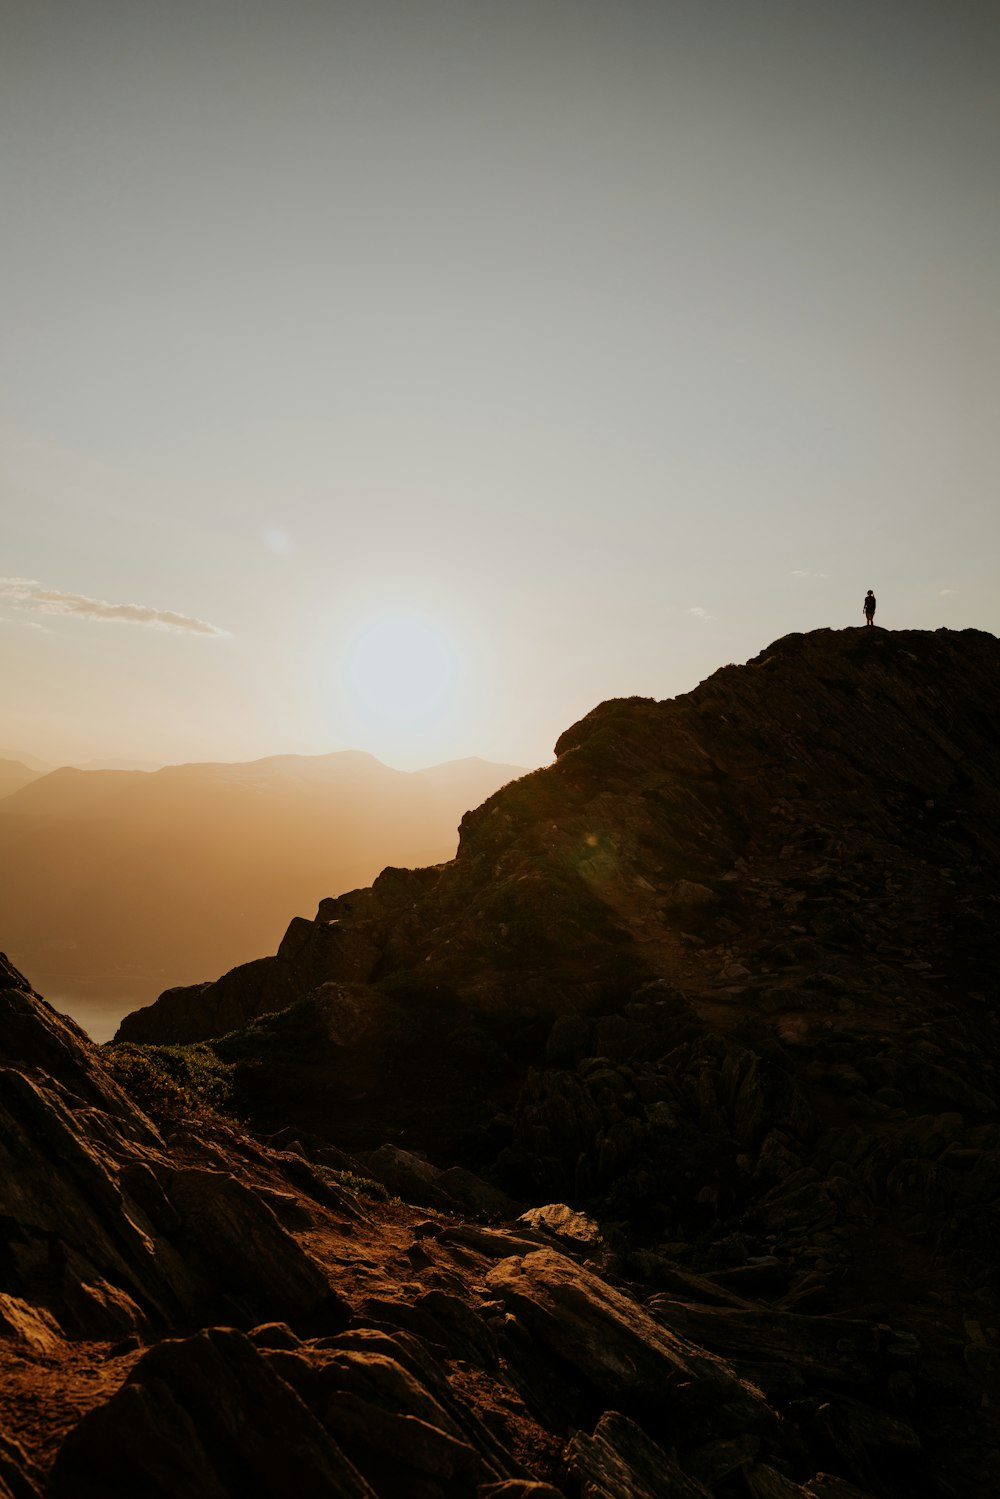 Silueta de la persona de pie en la formación rocosa durante la puesta del sol